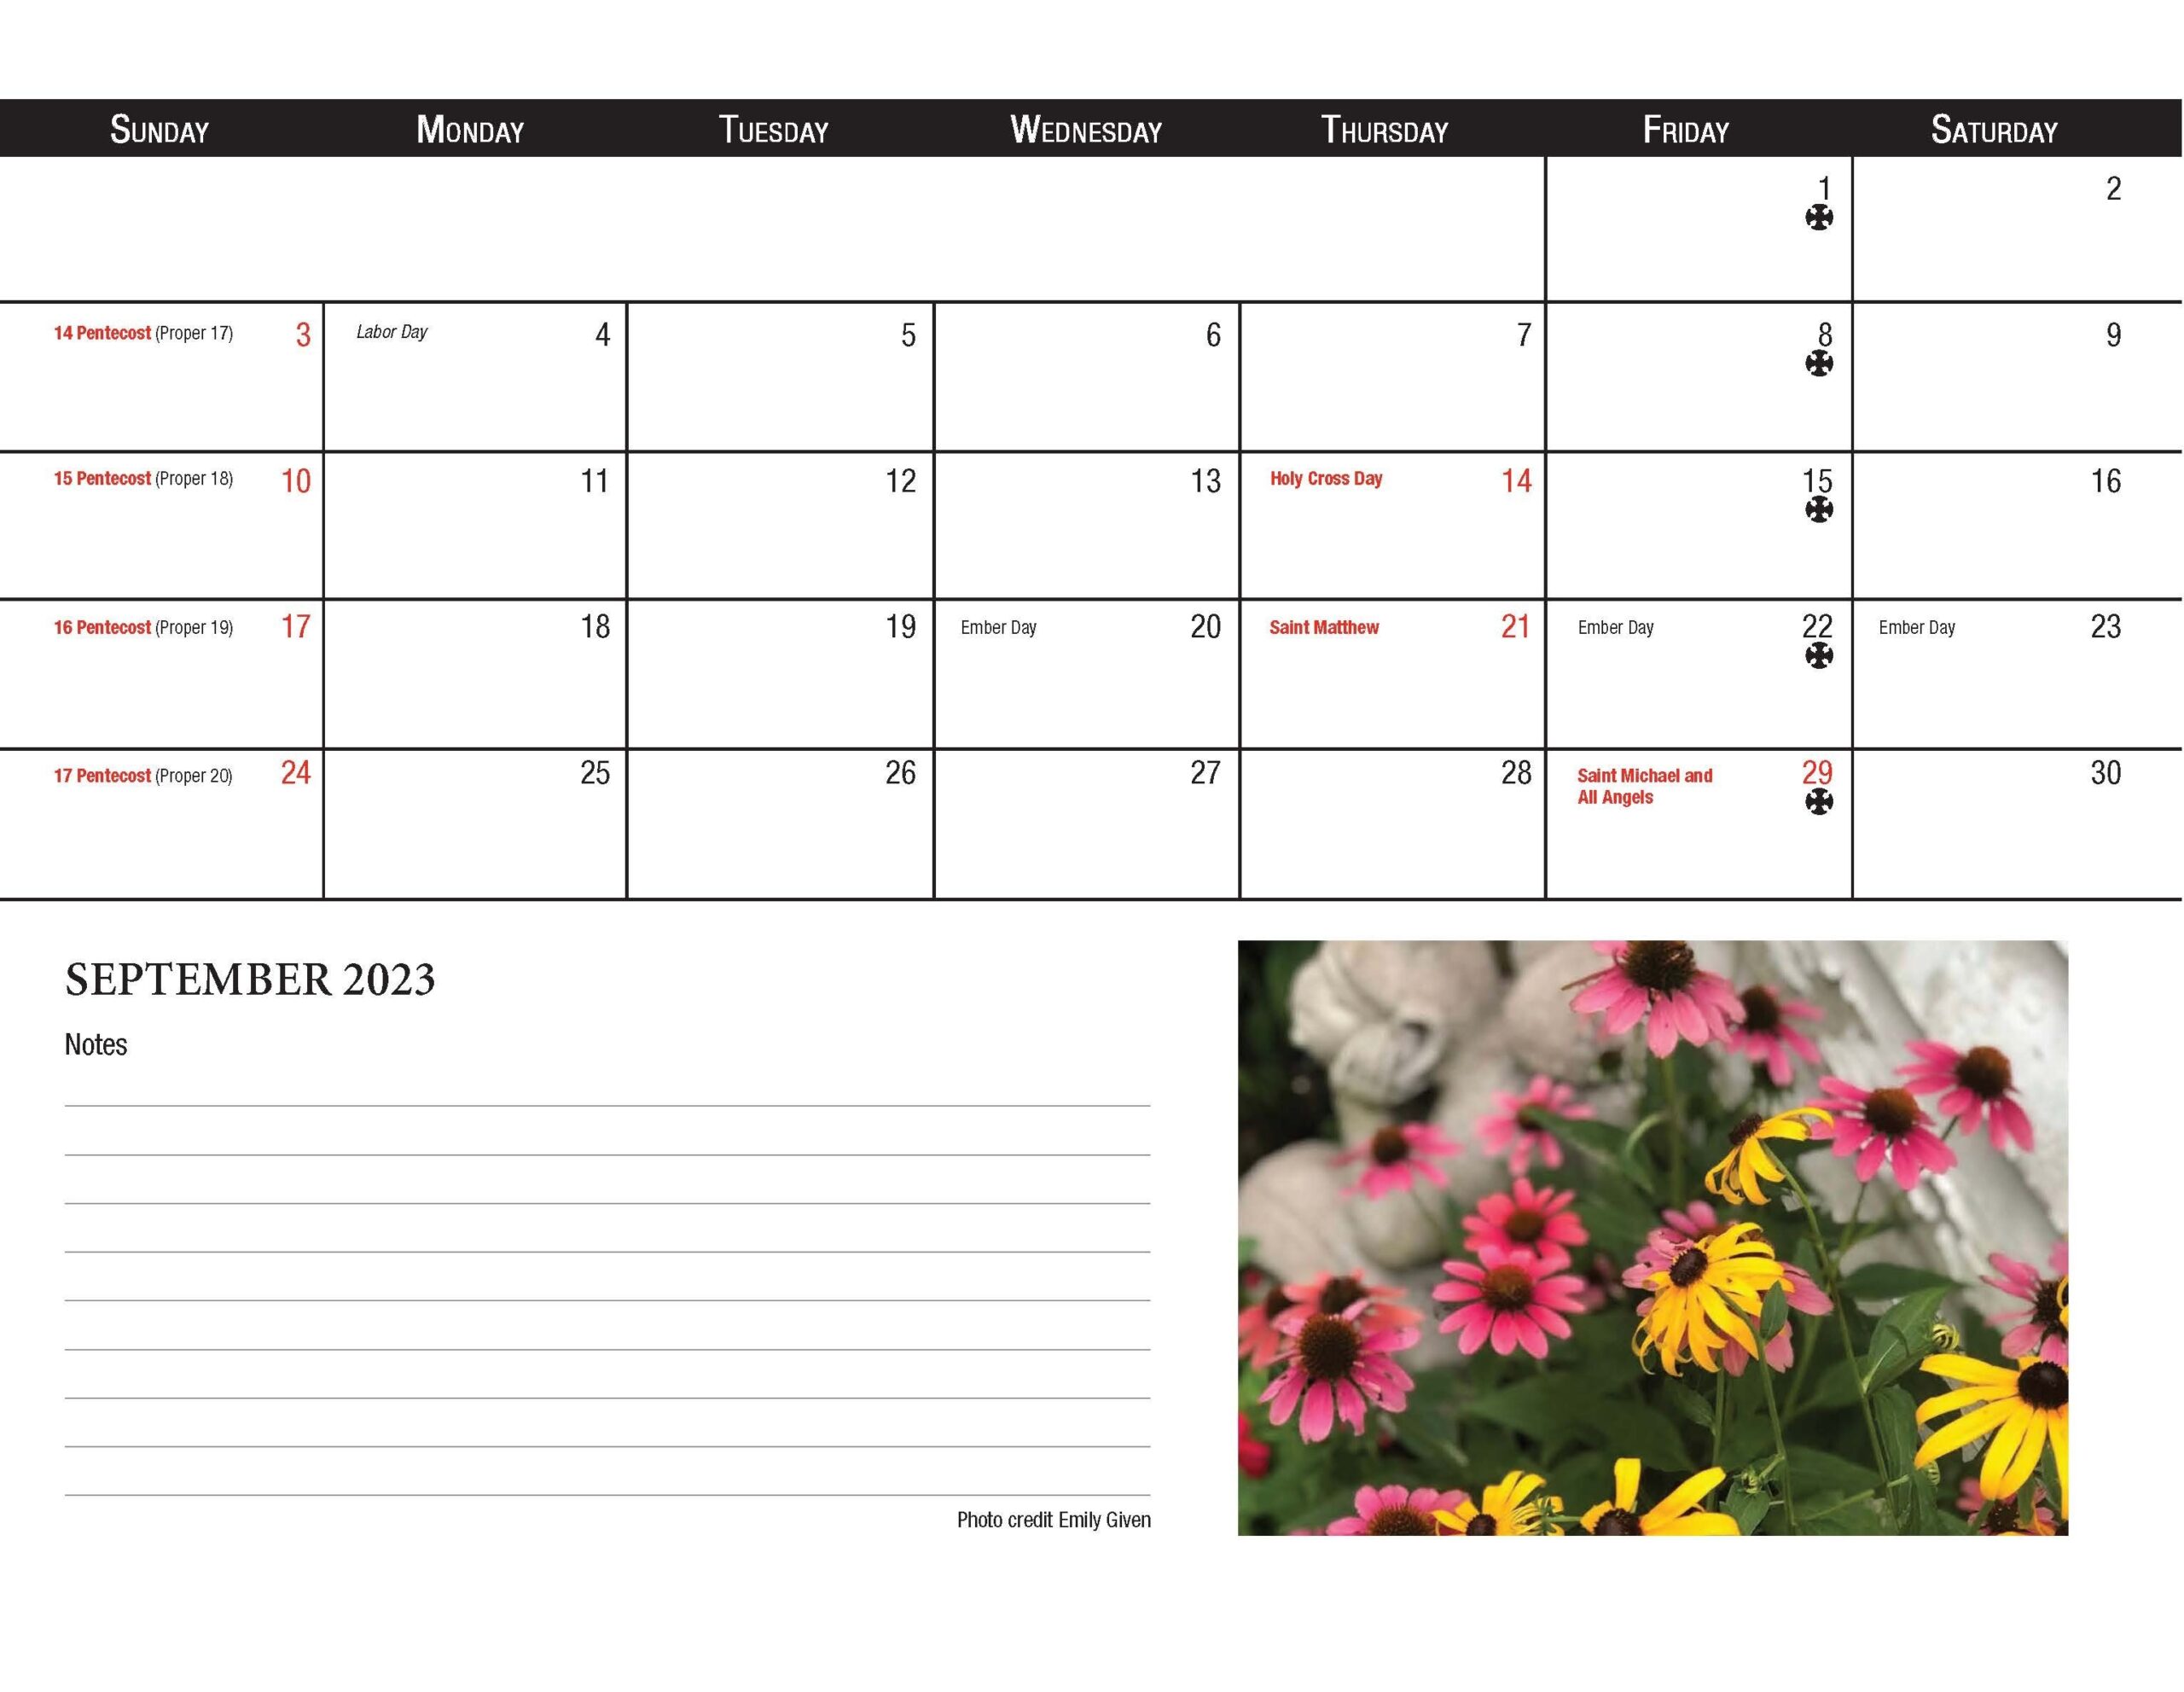 Catholic Liturgical Calendar 2023 2024 Get Calendar 2023 Update - Free Printable 2024 Calendar With Catholic Religious Holidays